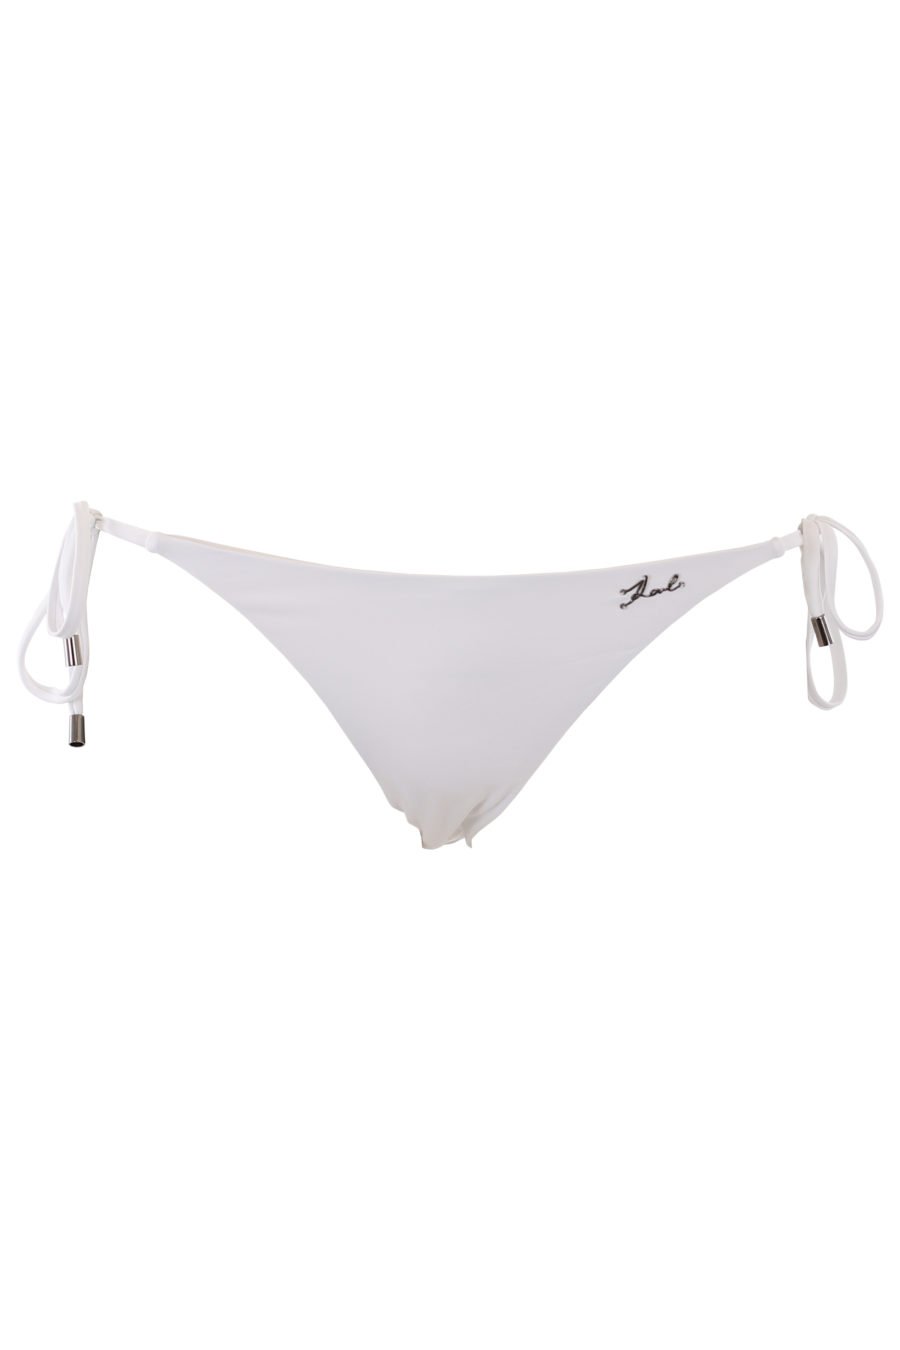 Bikiniunterteil in Weiß mit Schnürung und kleinem Metallschriftzug - IMG 1324